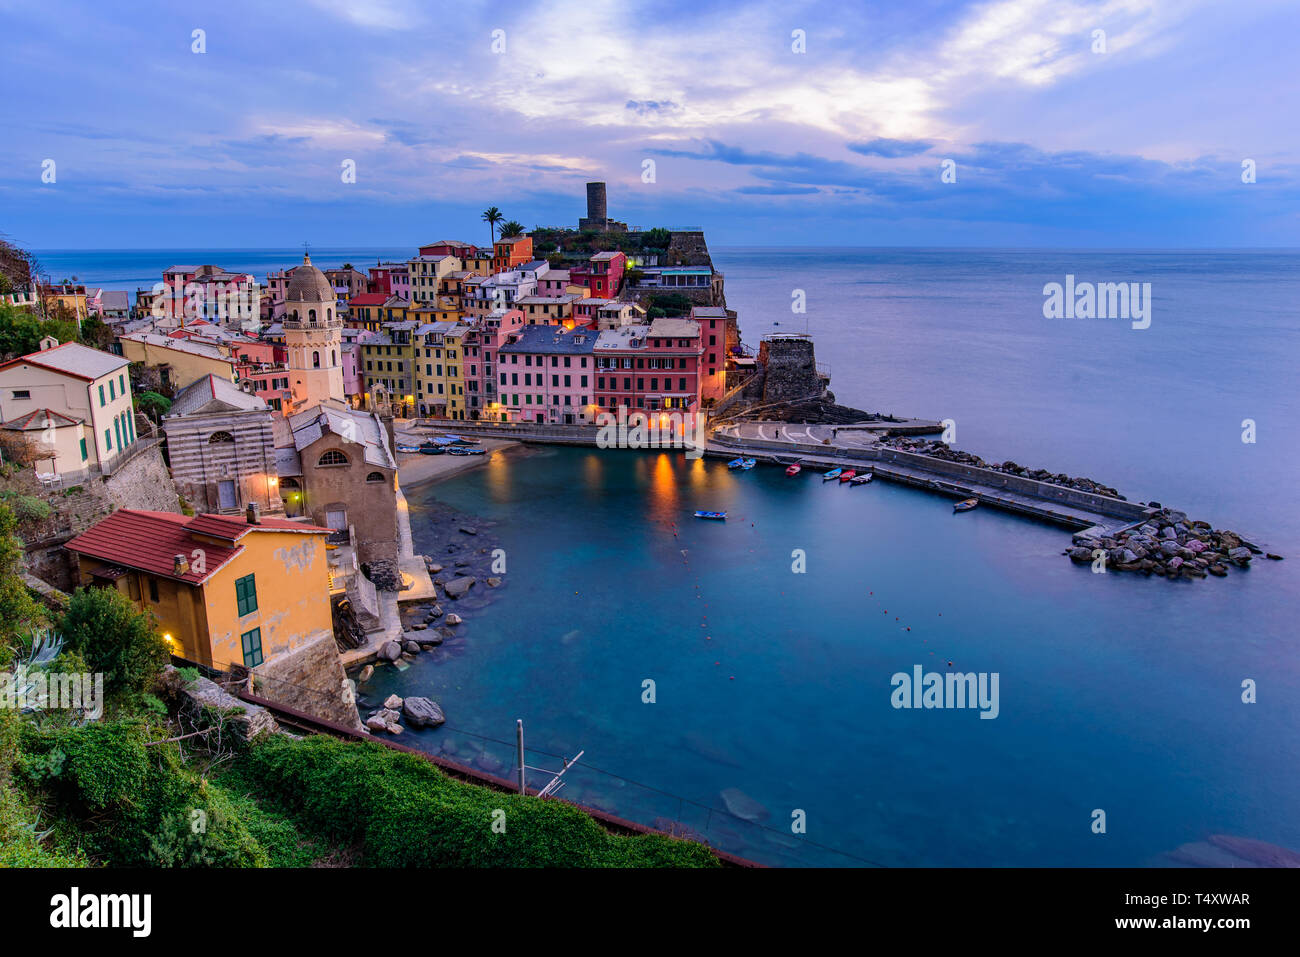 Vista de la puesta de sol de Vernazza, uno de los cinco pueblos mediterráneos en Cinque Terre, Italia, famosa por sus casas de colores y el puerto Foto de stock